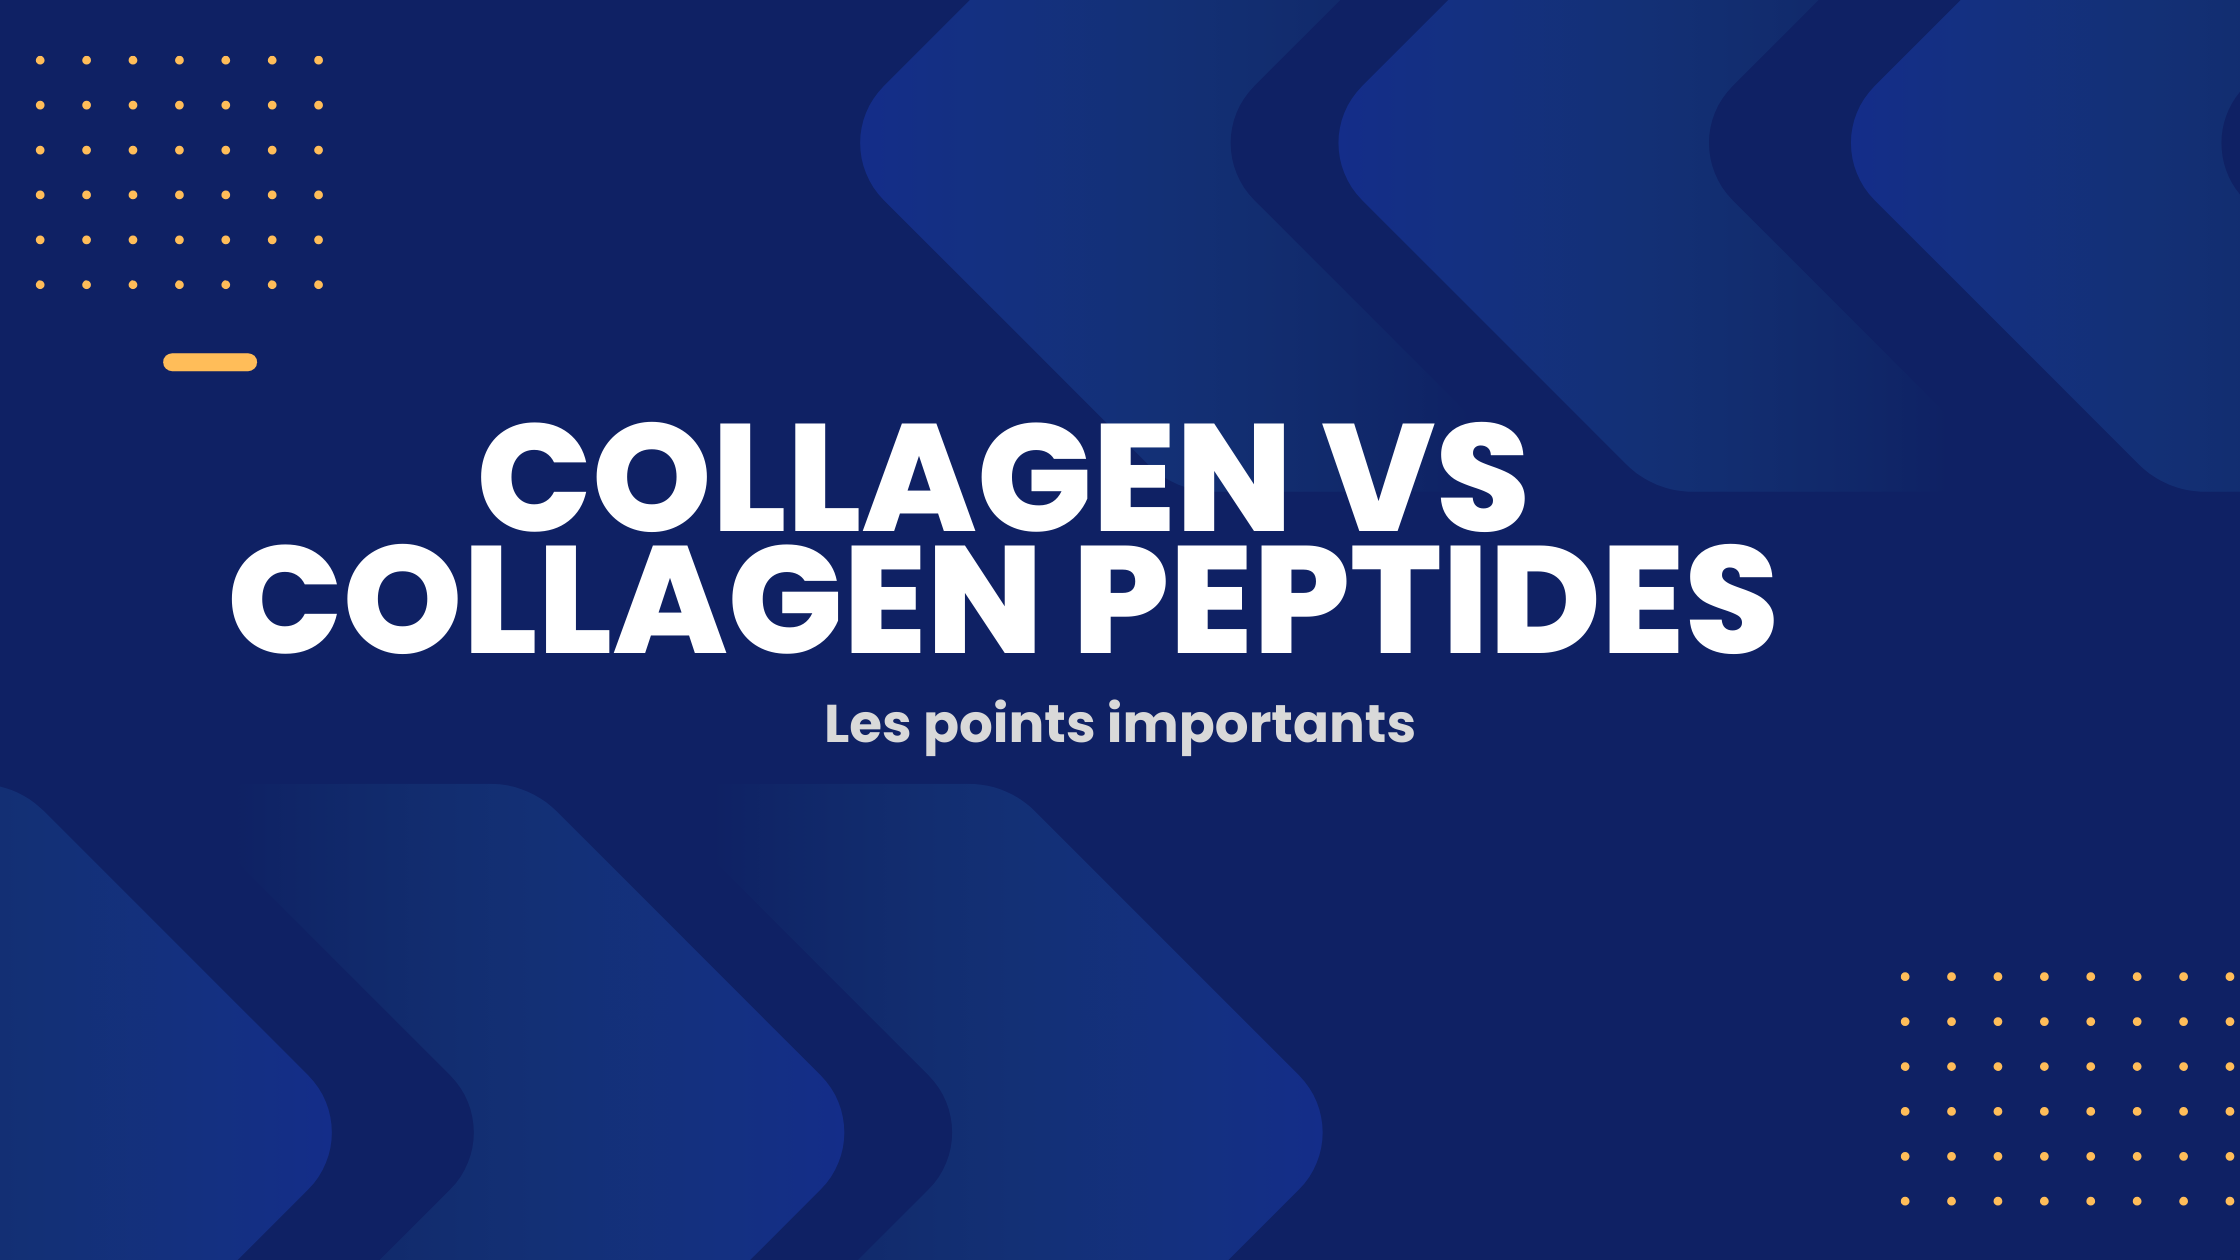 Collagen vs collagen peptides | Les points importants